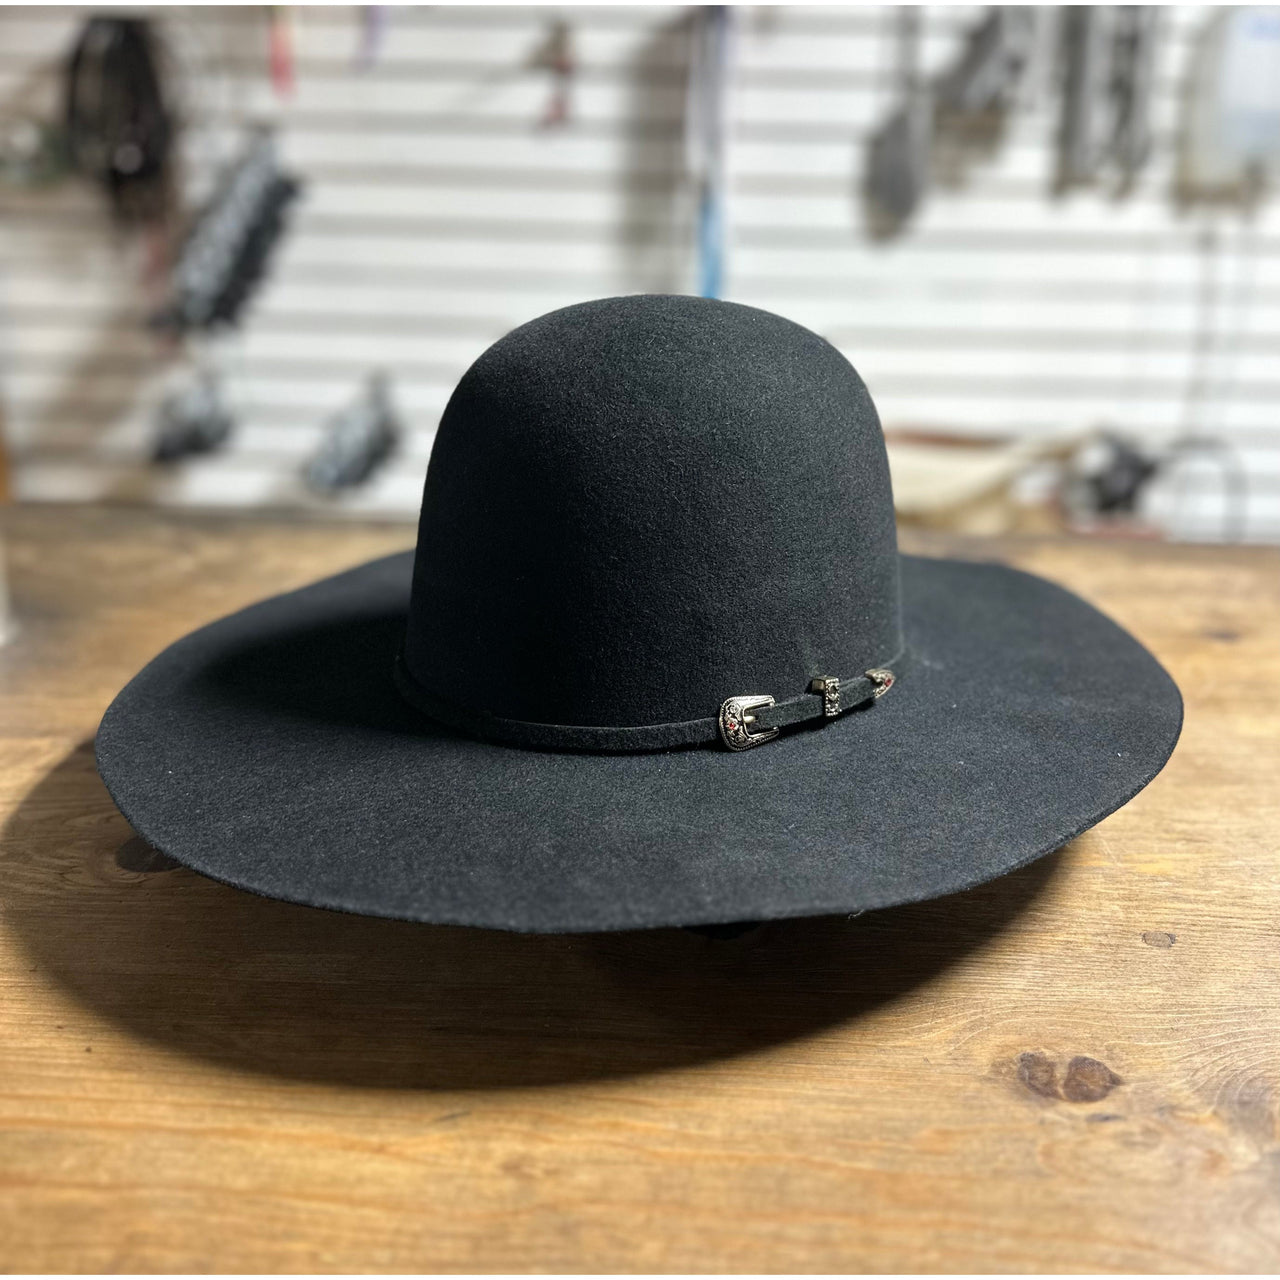 Prohat  Wool Felt Open Crown Western Hat - Black